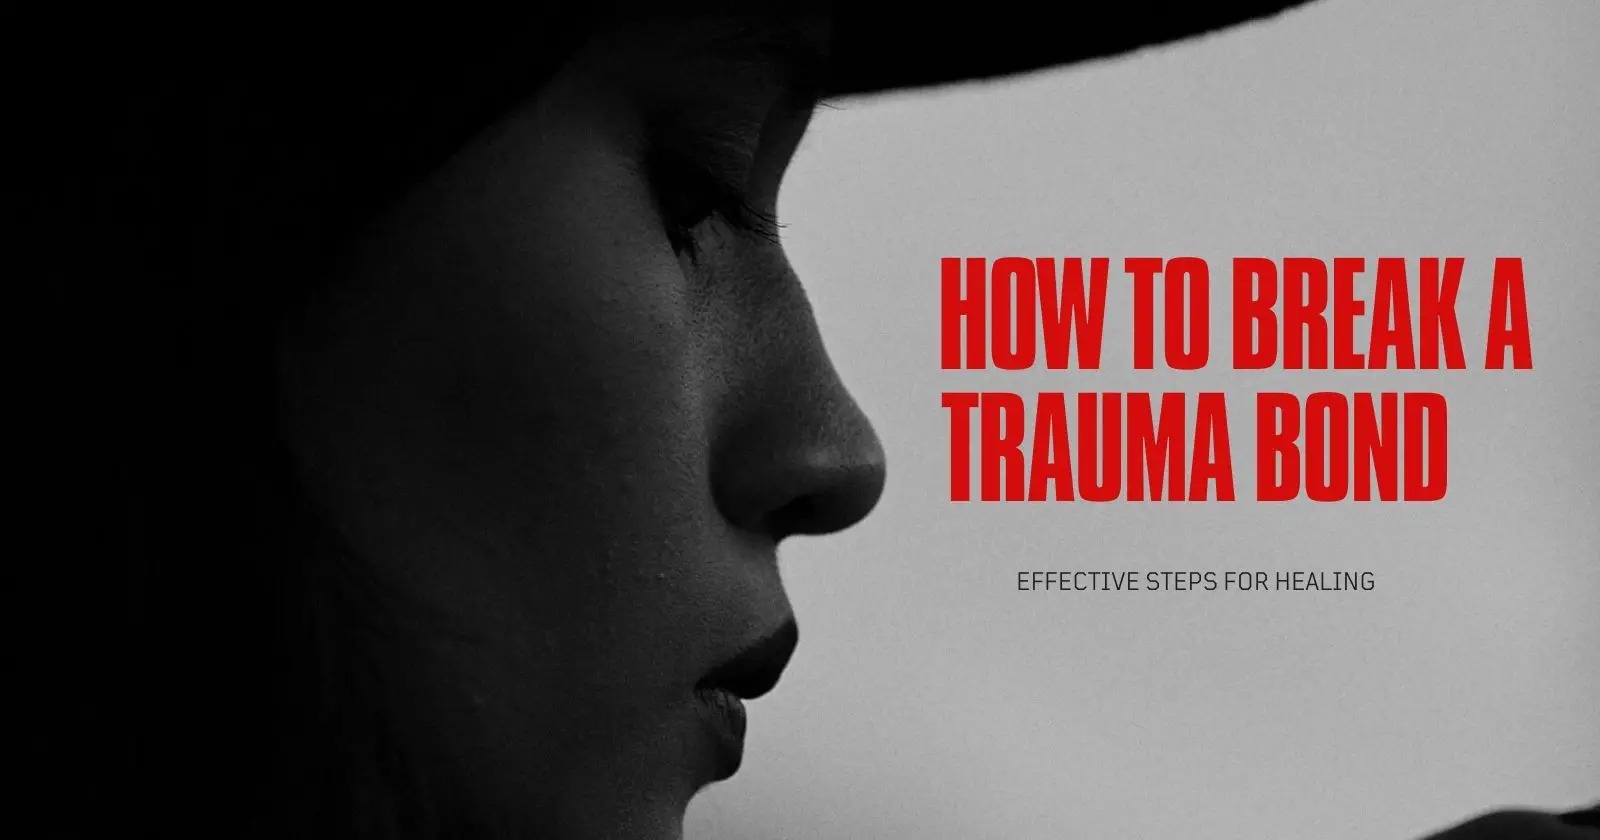 How to break a trauma bond